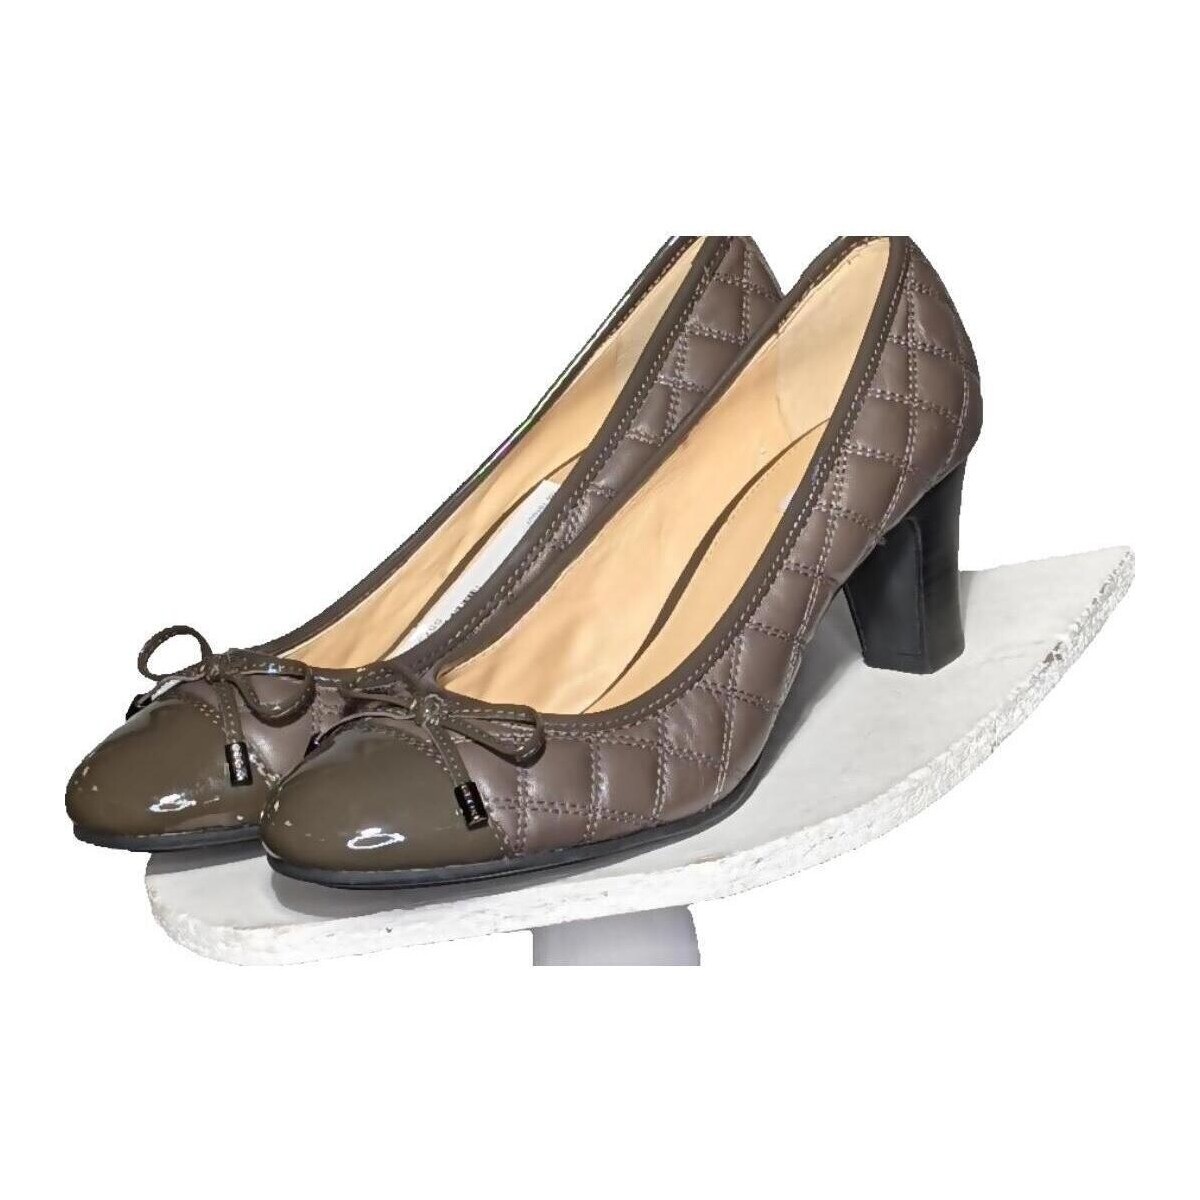 Chaussures Femme Escarpins Geox paire d'escarpins  39 Marron Marron